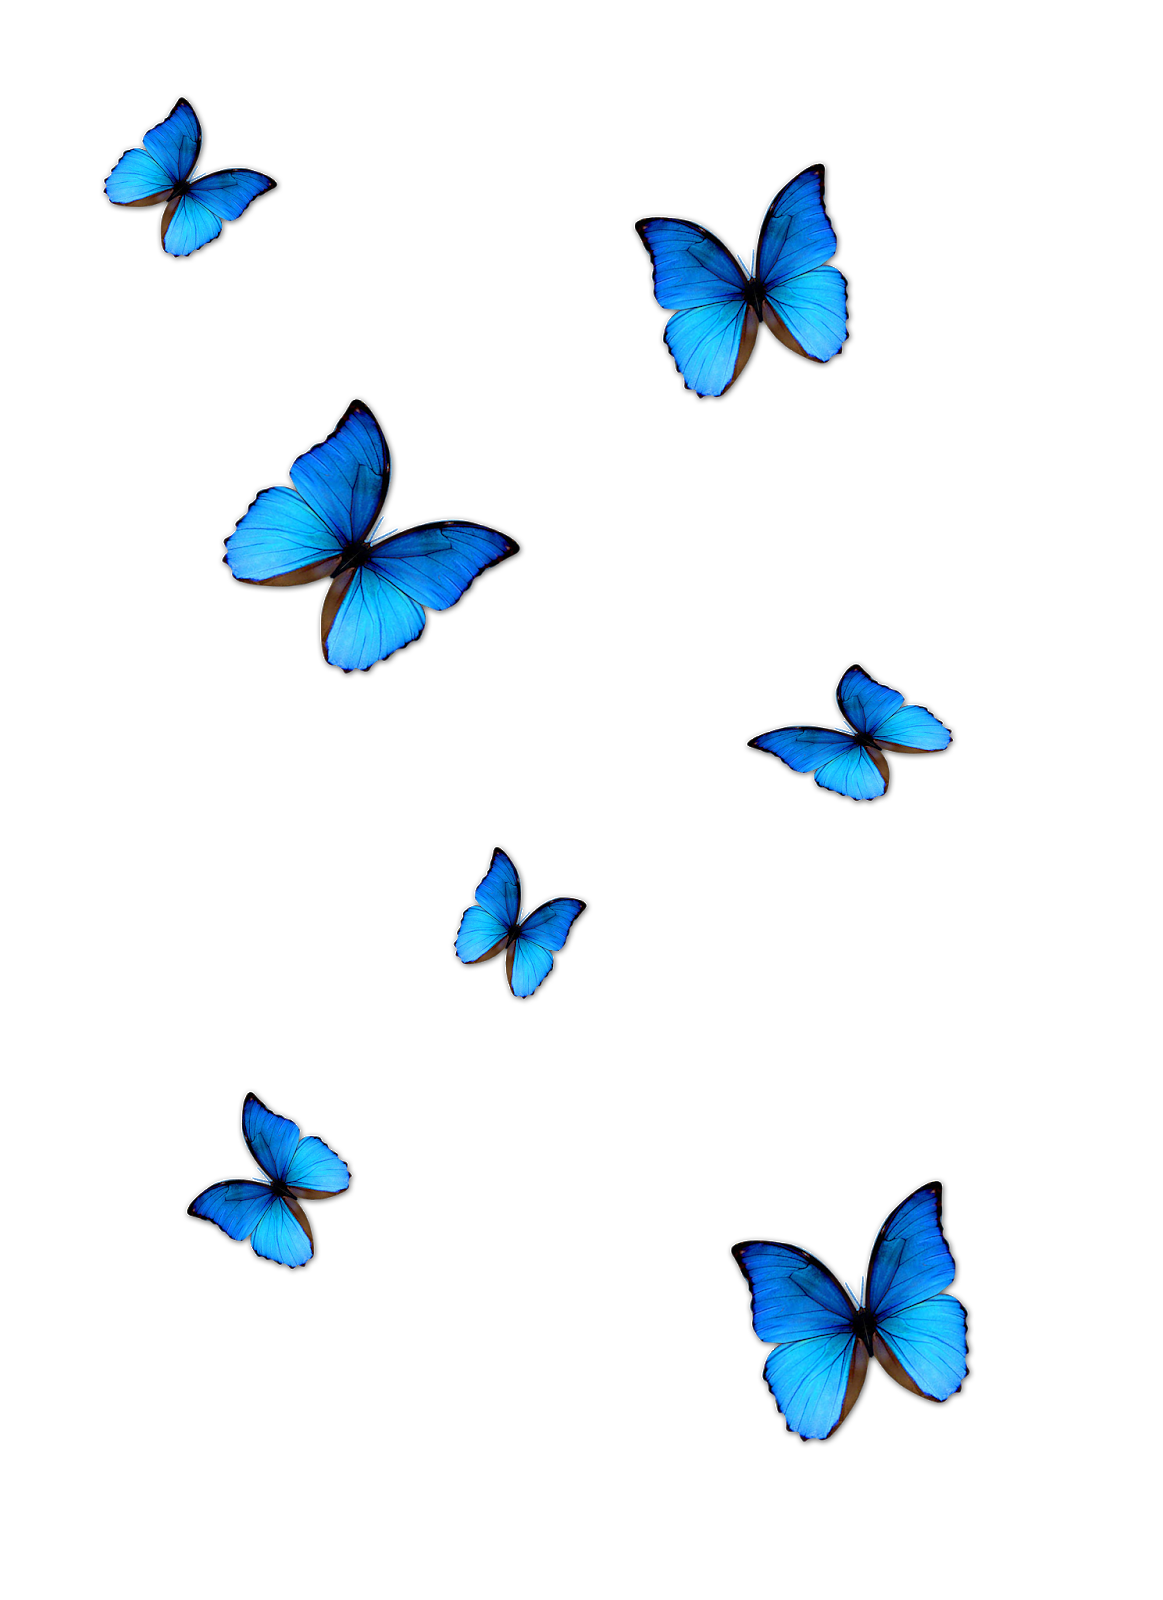 Tận hưởng hình ảnh bướm miễn phí để tạo ra nét độc đáo và cảm giác ấn tượng cho bất kỳ tác phẩm sáng tạo nào của bạn. Hình ảnh này sẽ giúp cho bạn tạo ra một sự kết nối tuyệt vời với thiên nhiên.